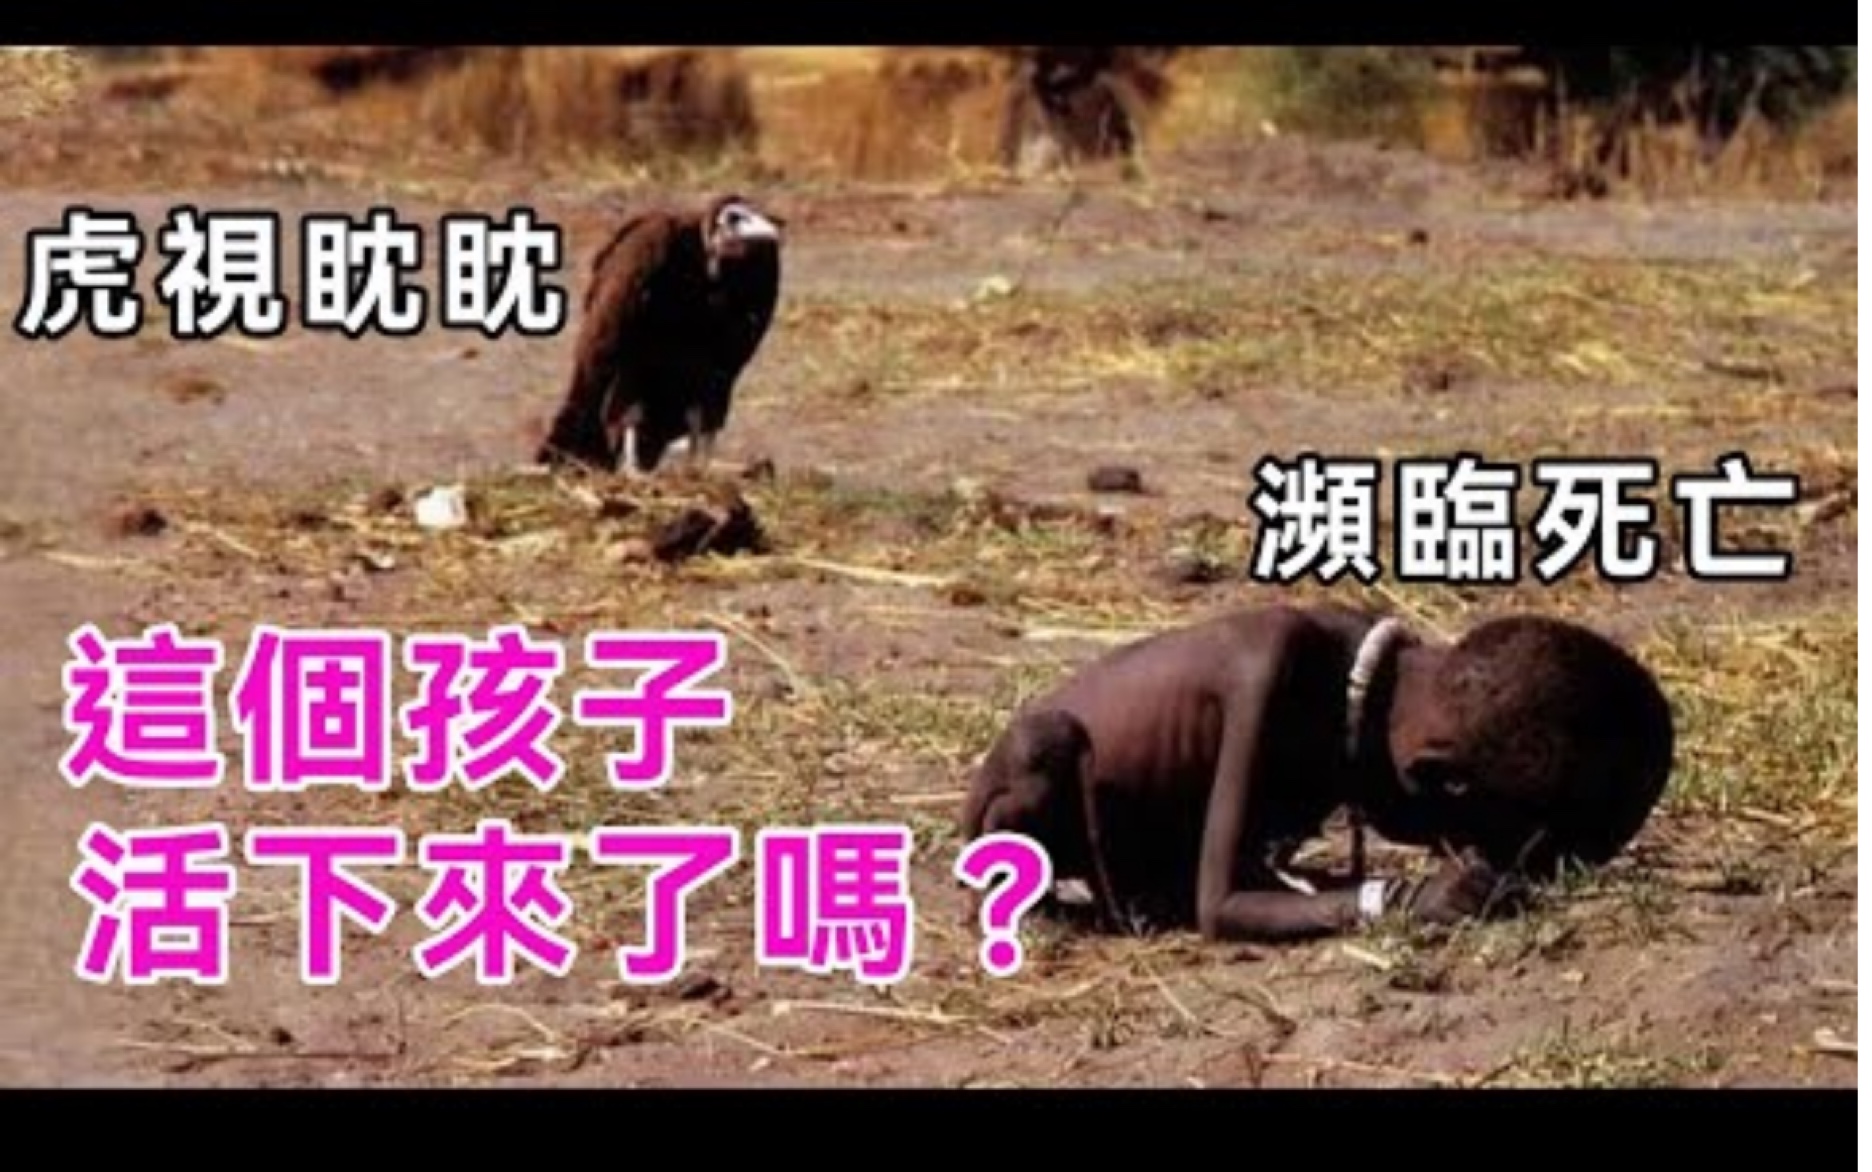 秃鹫在后面虎视眈眈最后结局如何揭开饥饿的苏丹背后真相非洲小孩谈笑